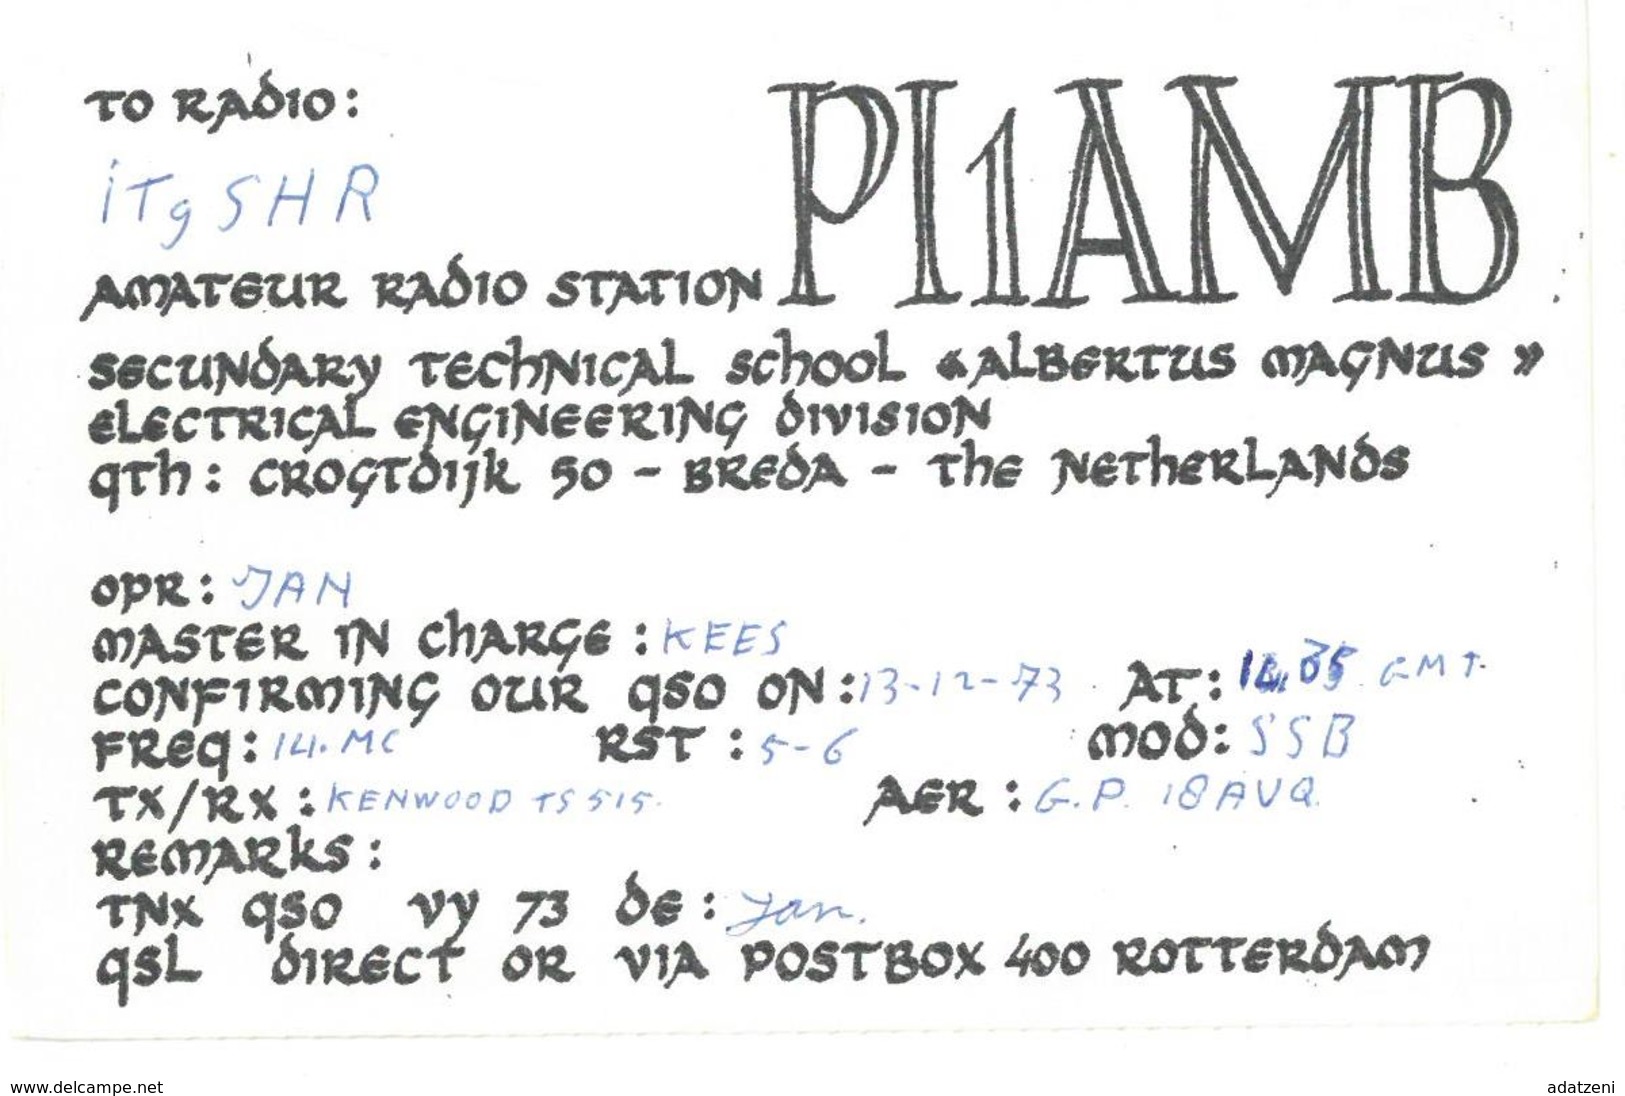 Pubblicità Cartolina Stazione Olanda PI1AMB Alla Stazione To Station Marina Radio IT9SHR Data 13 Dicembre 1973 Chiaramon - CB